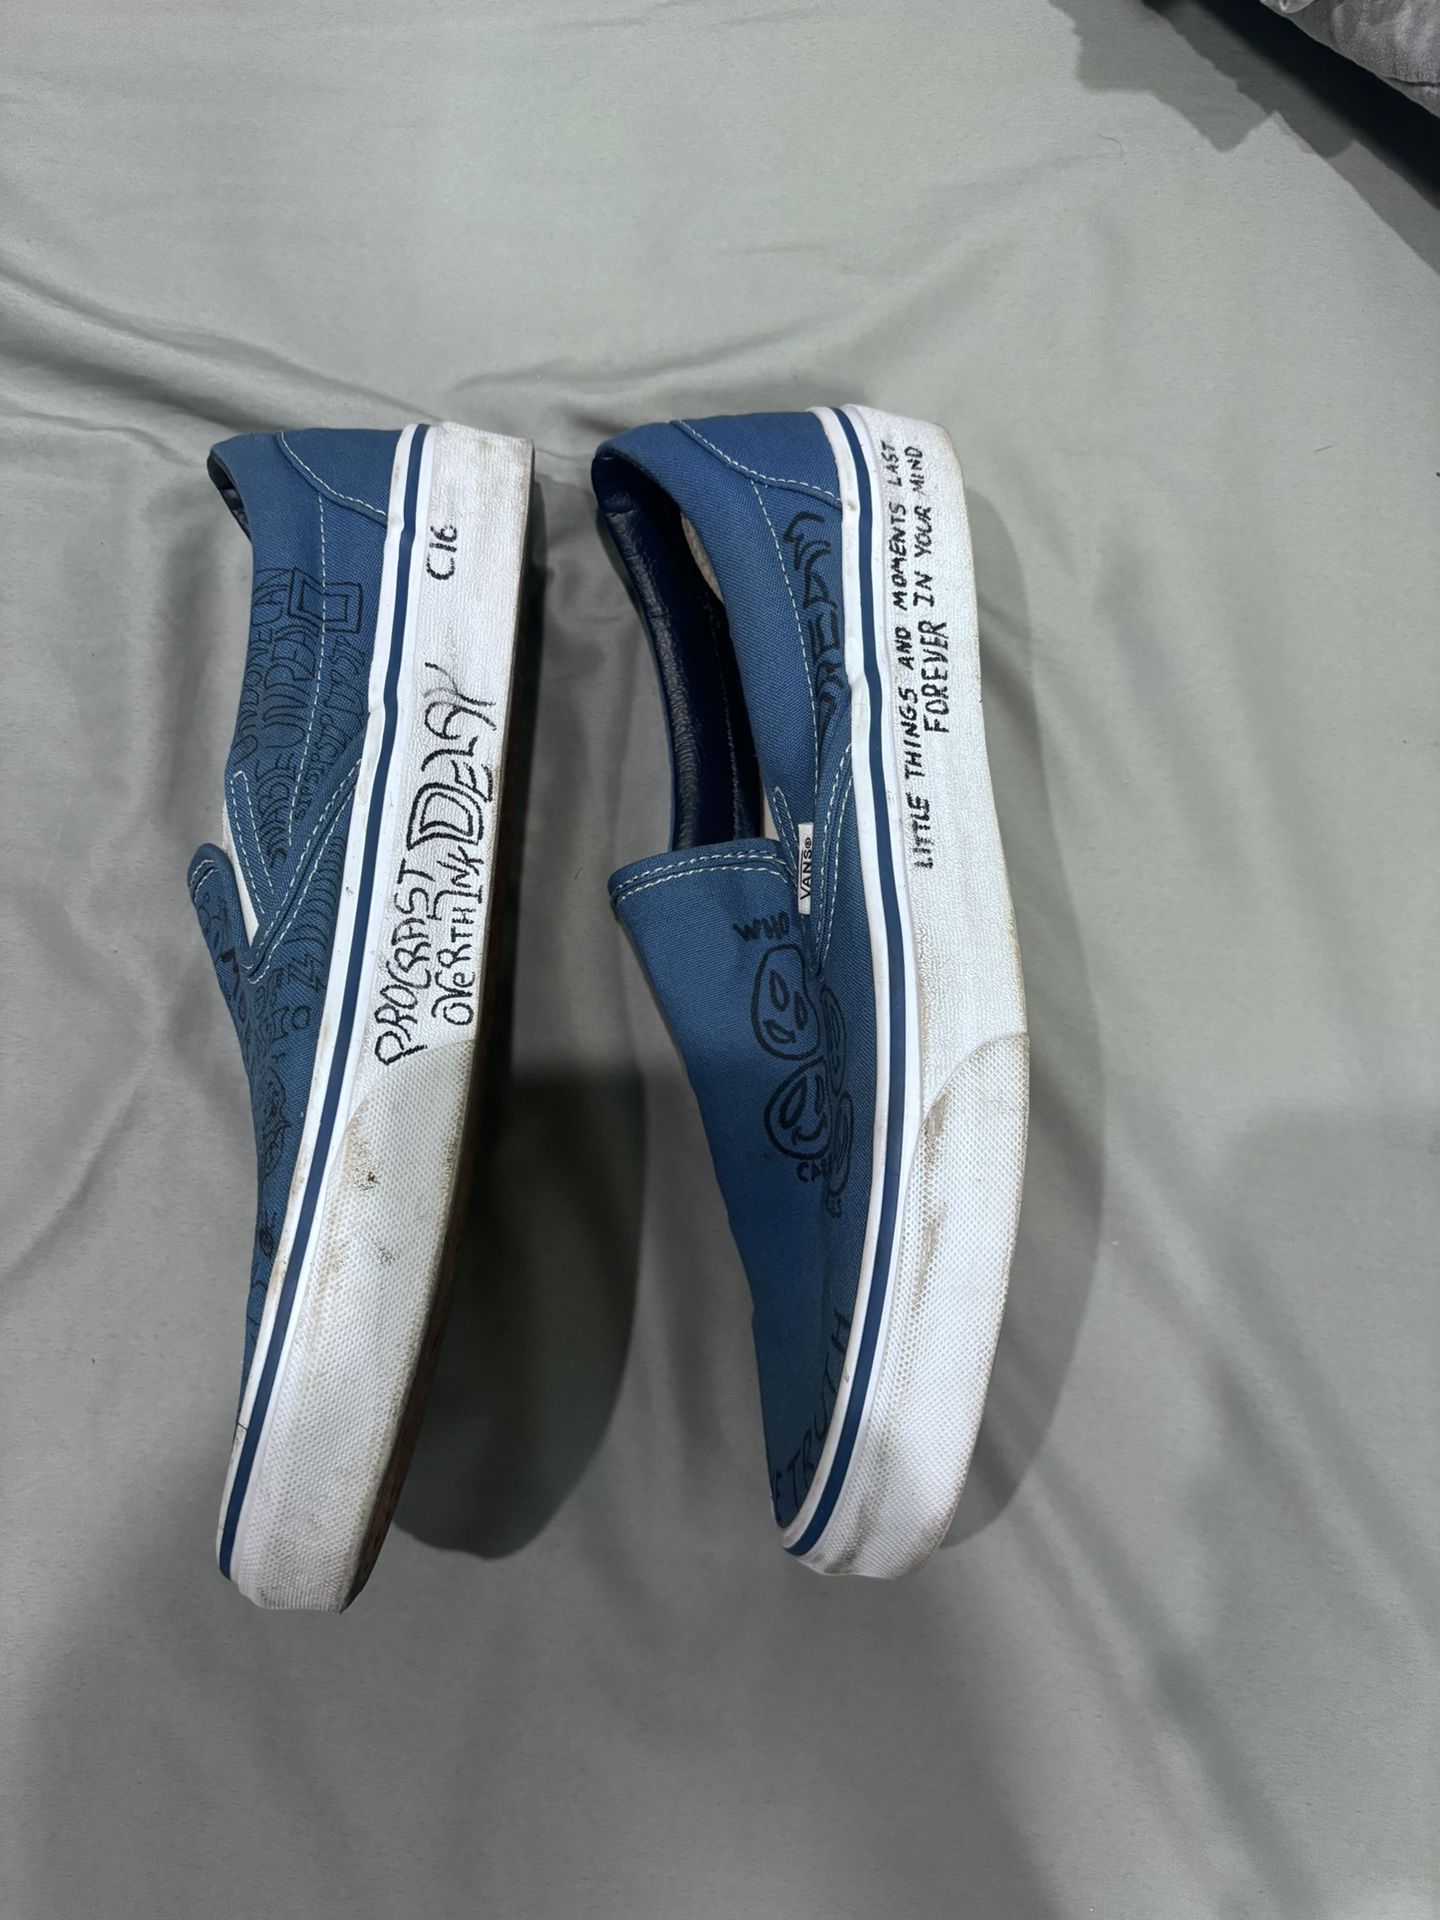 Vans (Custom) Blue Slip On